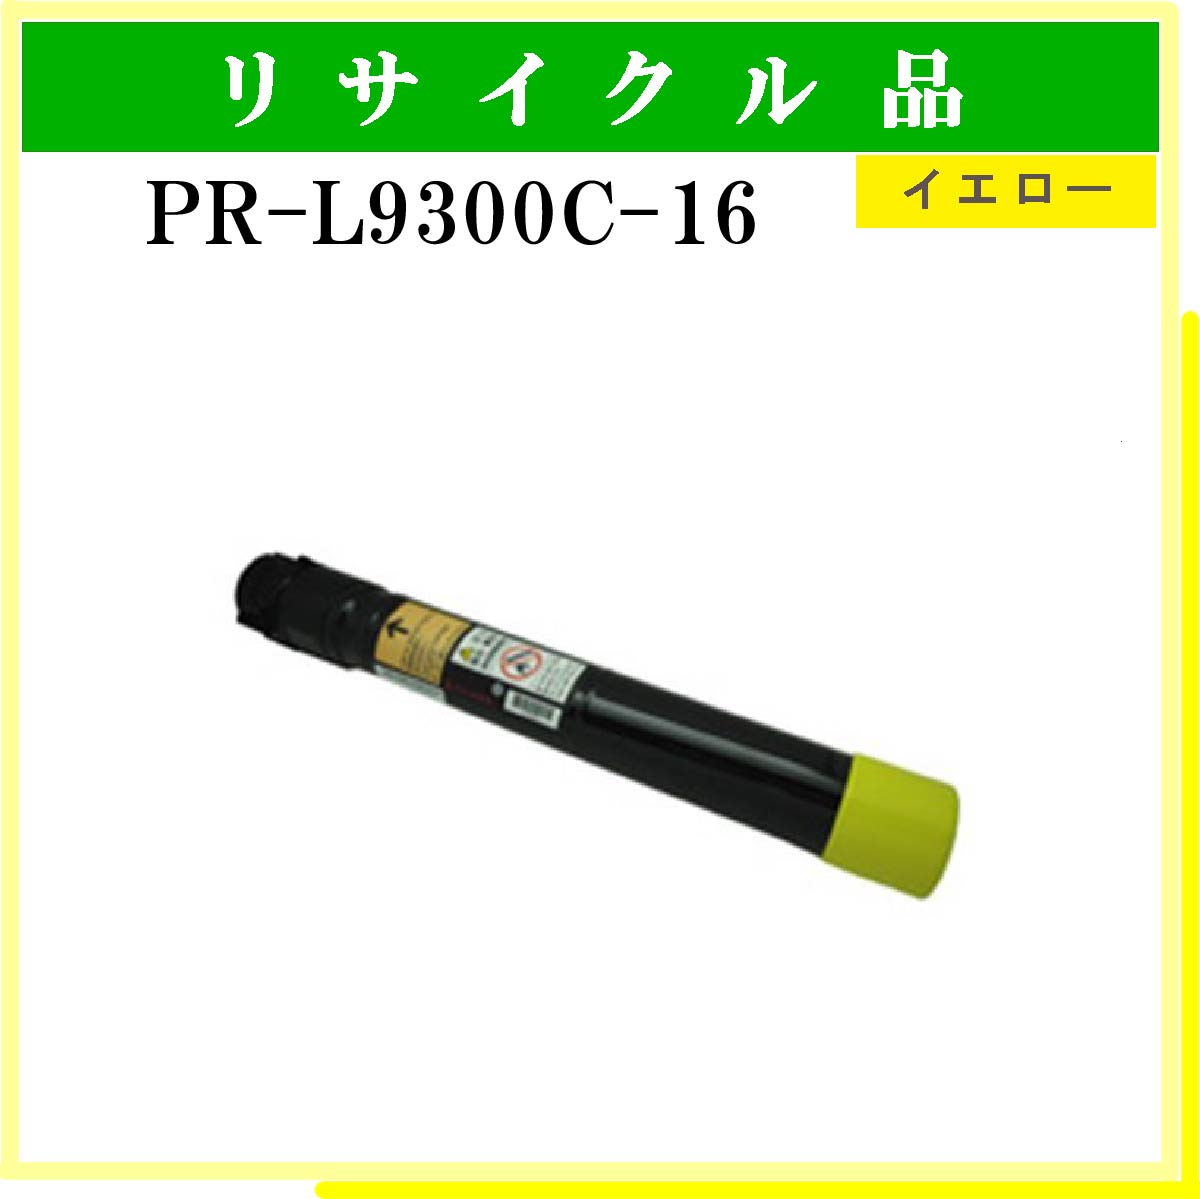 PR-L9300C-16